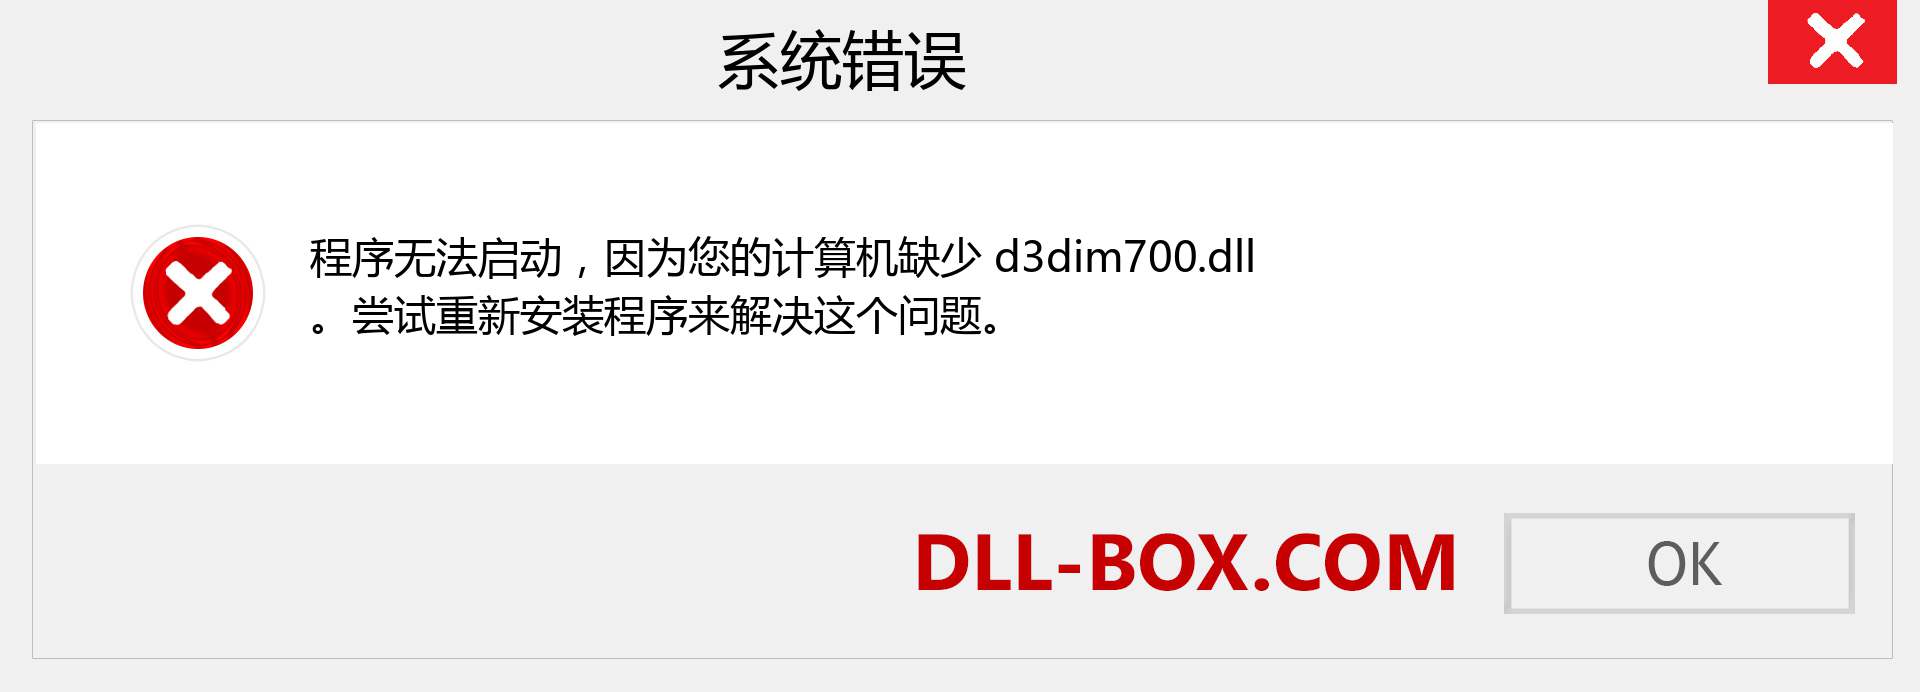 d3dim700.dll 文件丢失？。 适用于 Windows 7、8、10 的下载 - 修复 Windows、照片、图像上的 d3dim700 dll 丢失错误